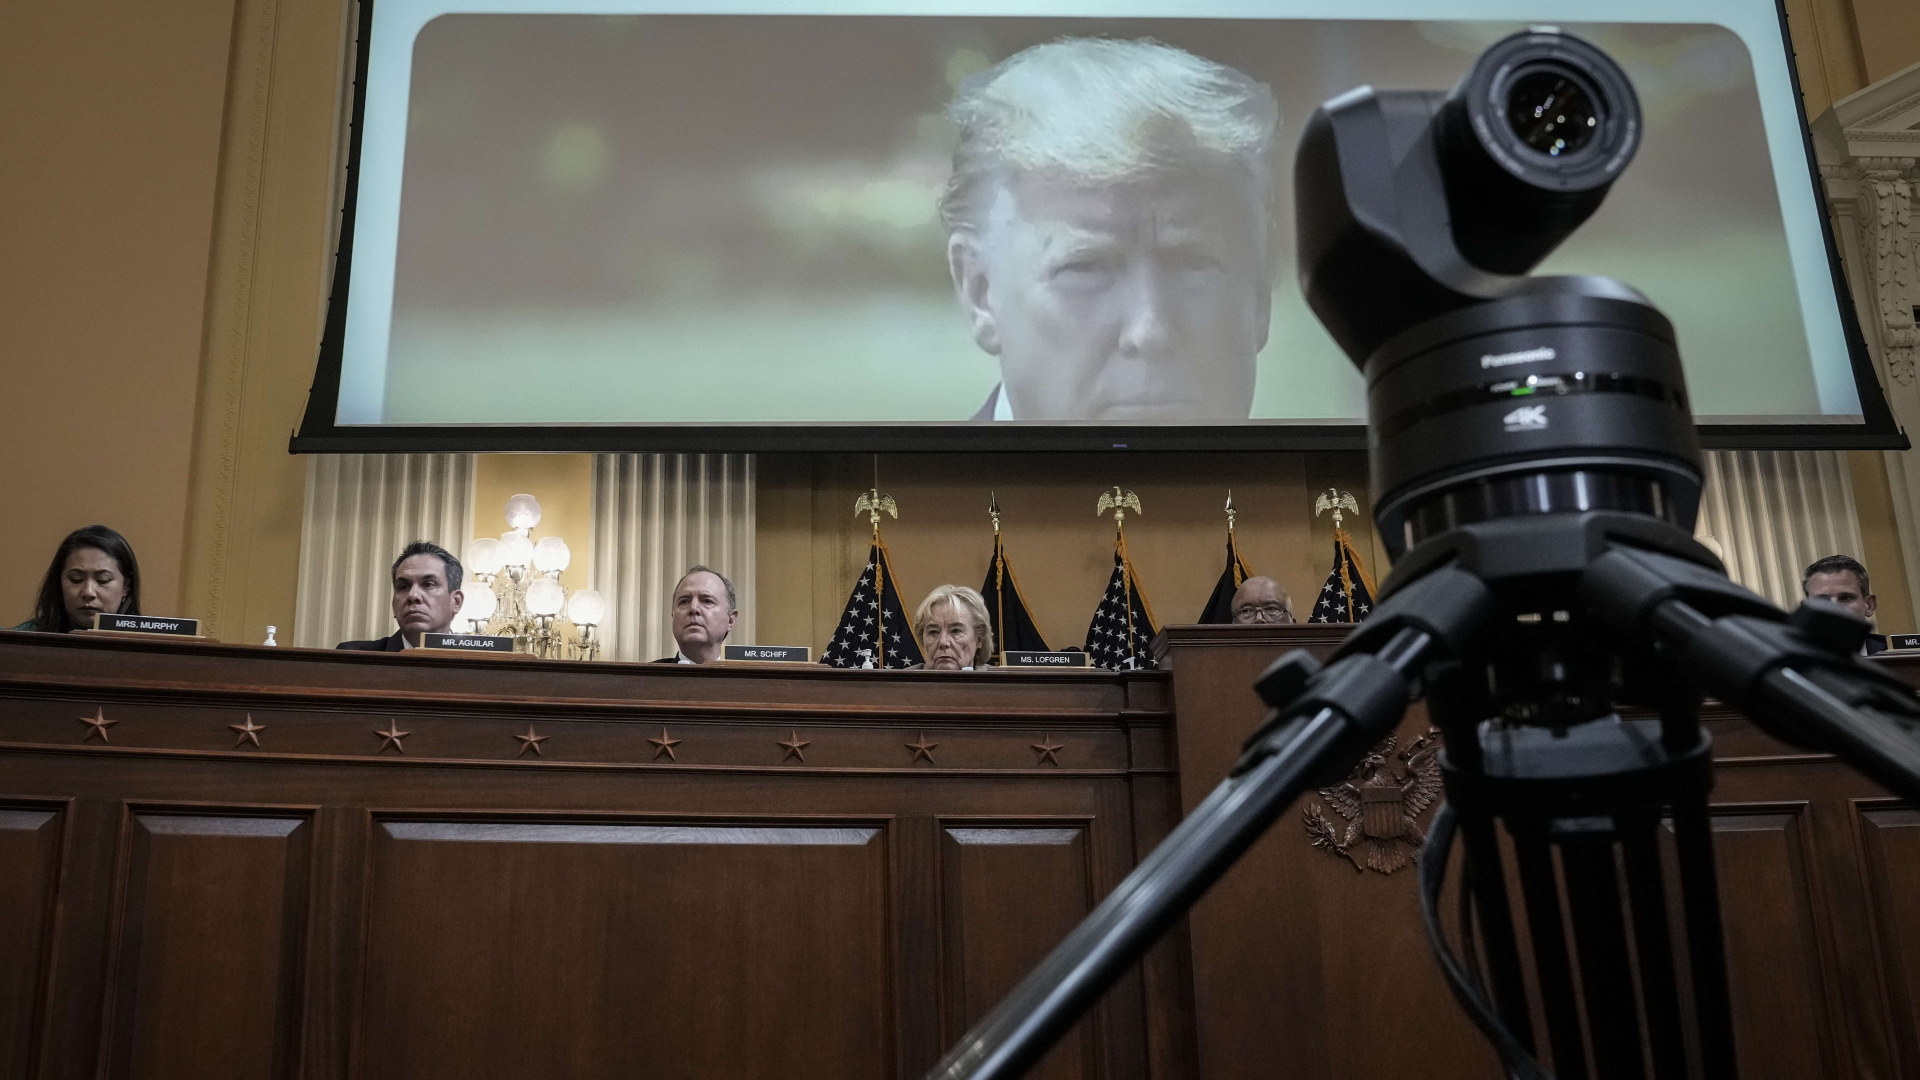 Videomaterial von Ex-Präsident Trump wird im Kapitol-Untersuchungsausschuss gezeigt